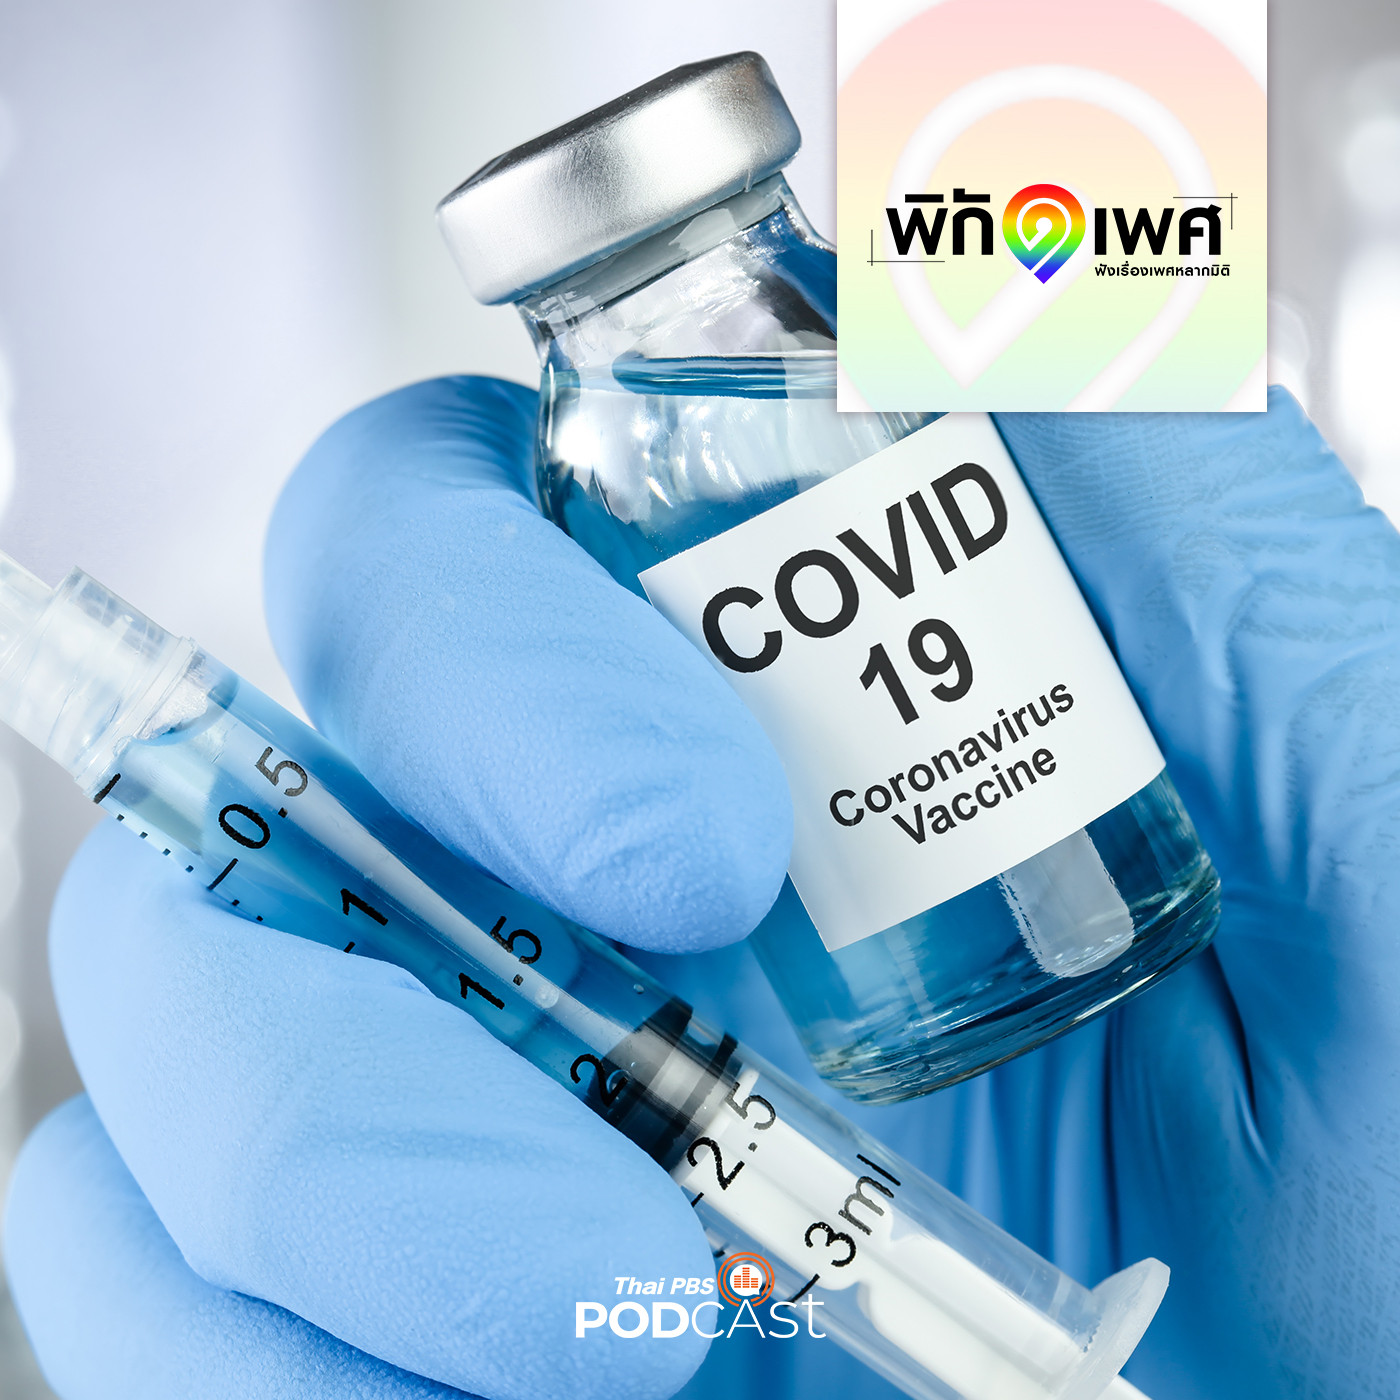 พิกัดเพศ EP. 111: LGBT ปัดรับวัคซีนโควิด-19